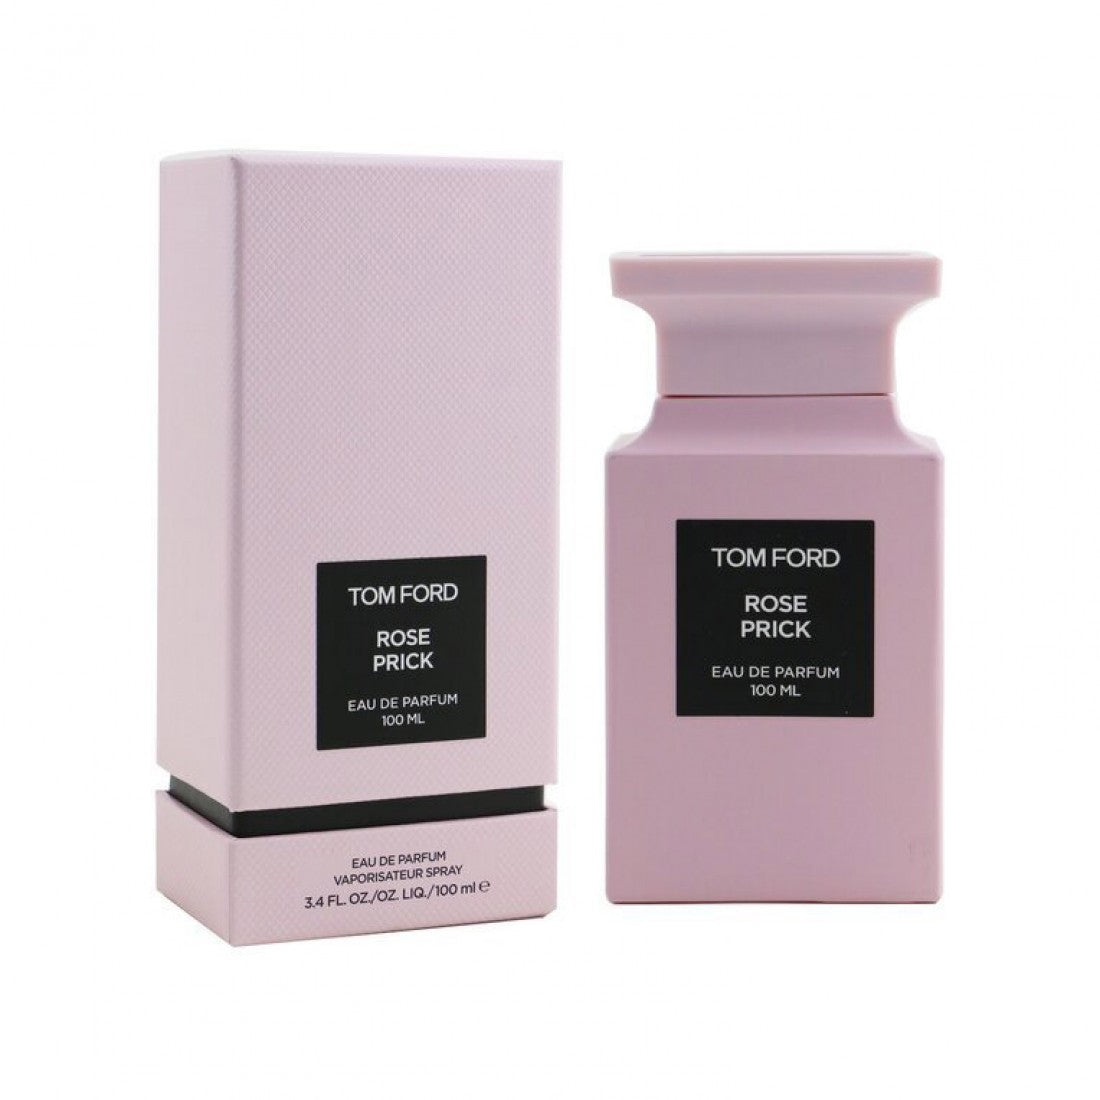 Tom Ford Rose Prick Eau De Parfum 100 ml